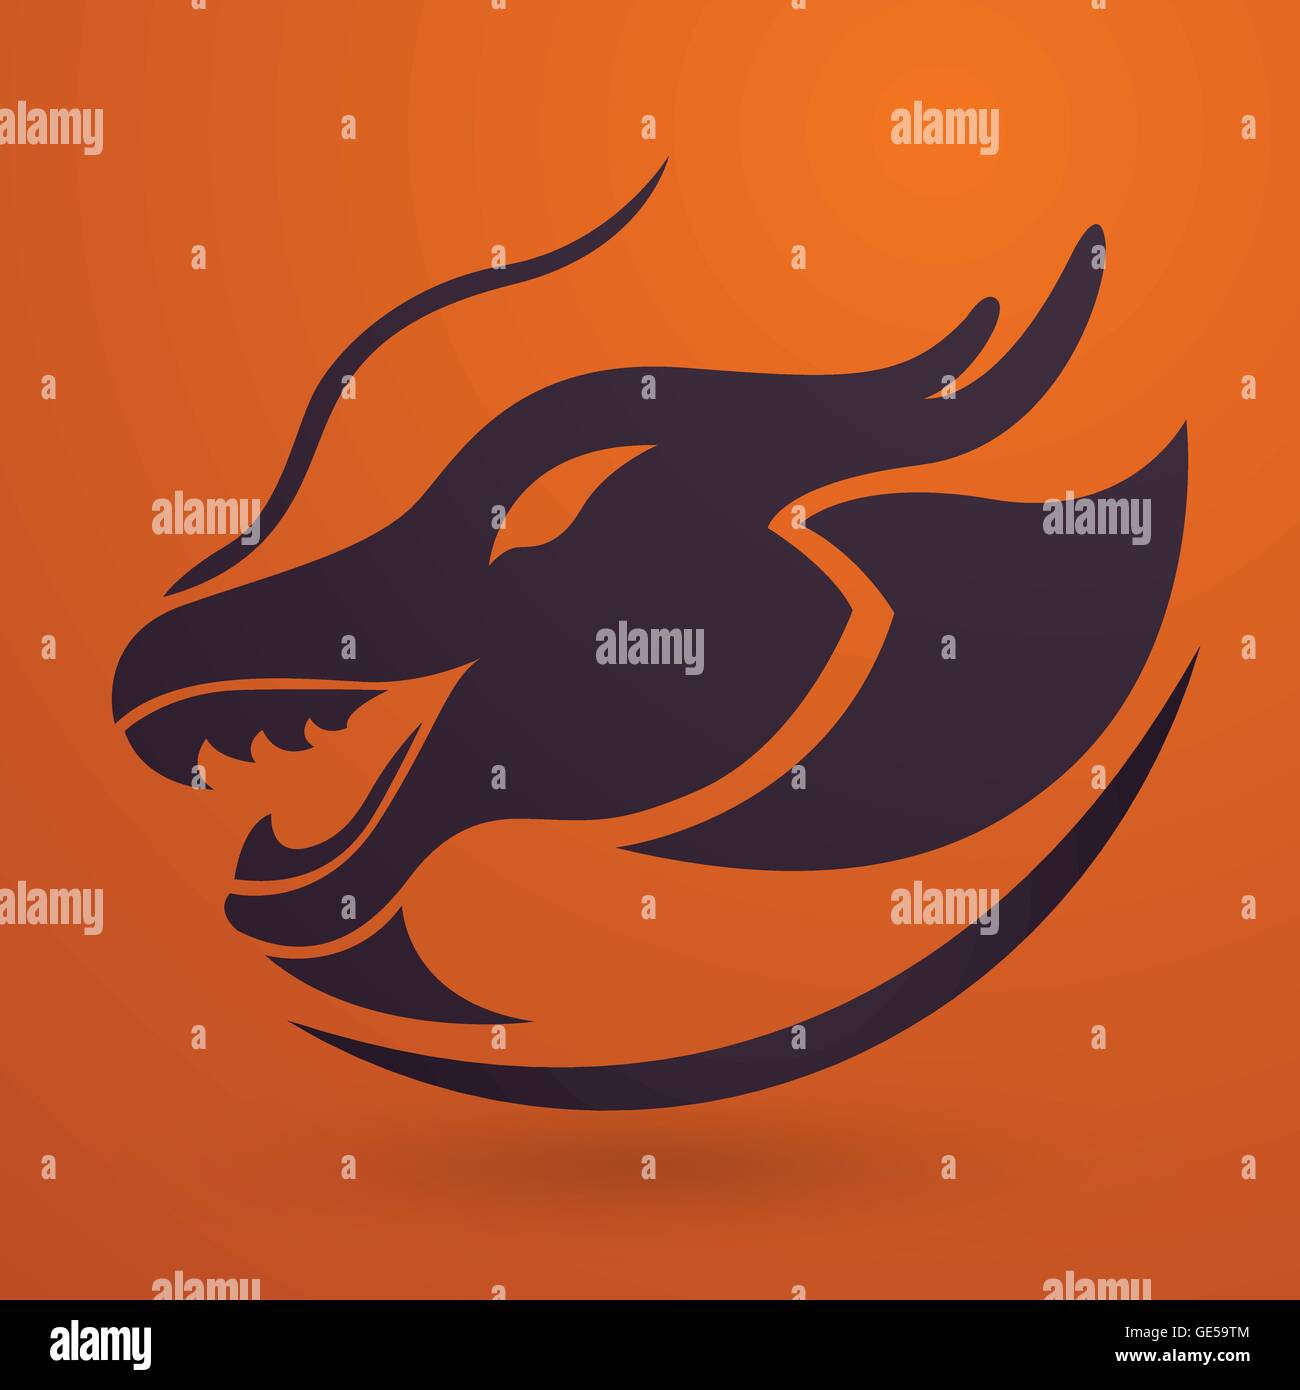 Dragon logo vector design template, dragon icon Stock Vector Image ...